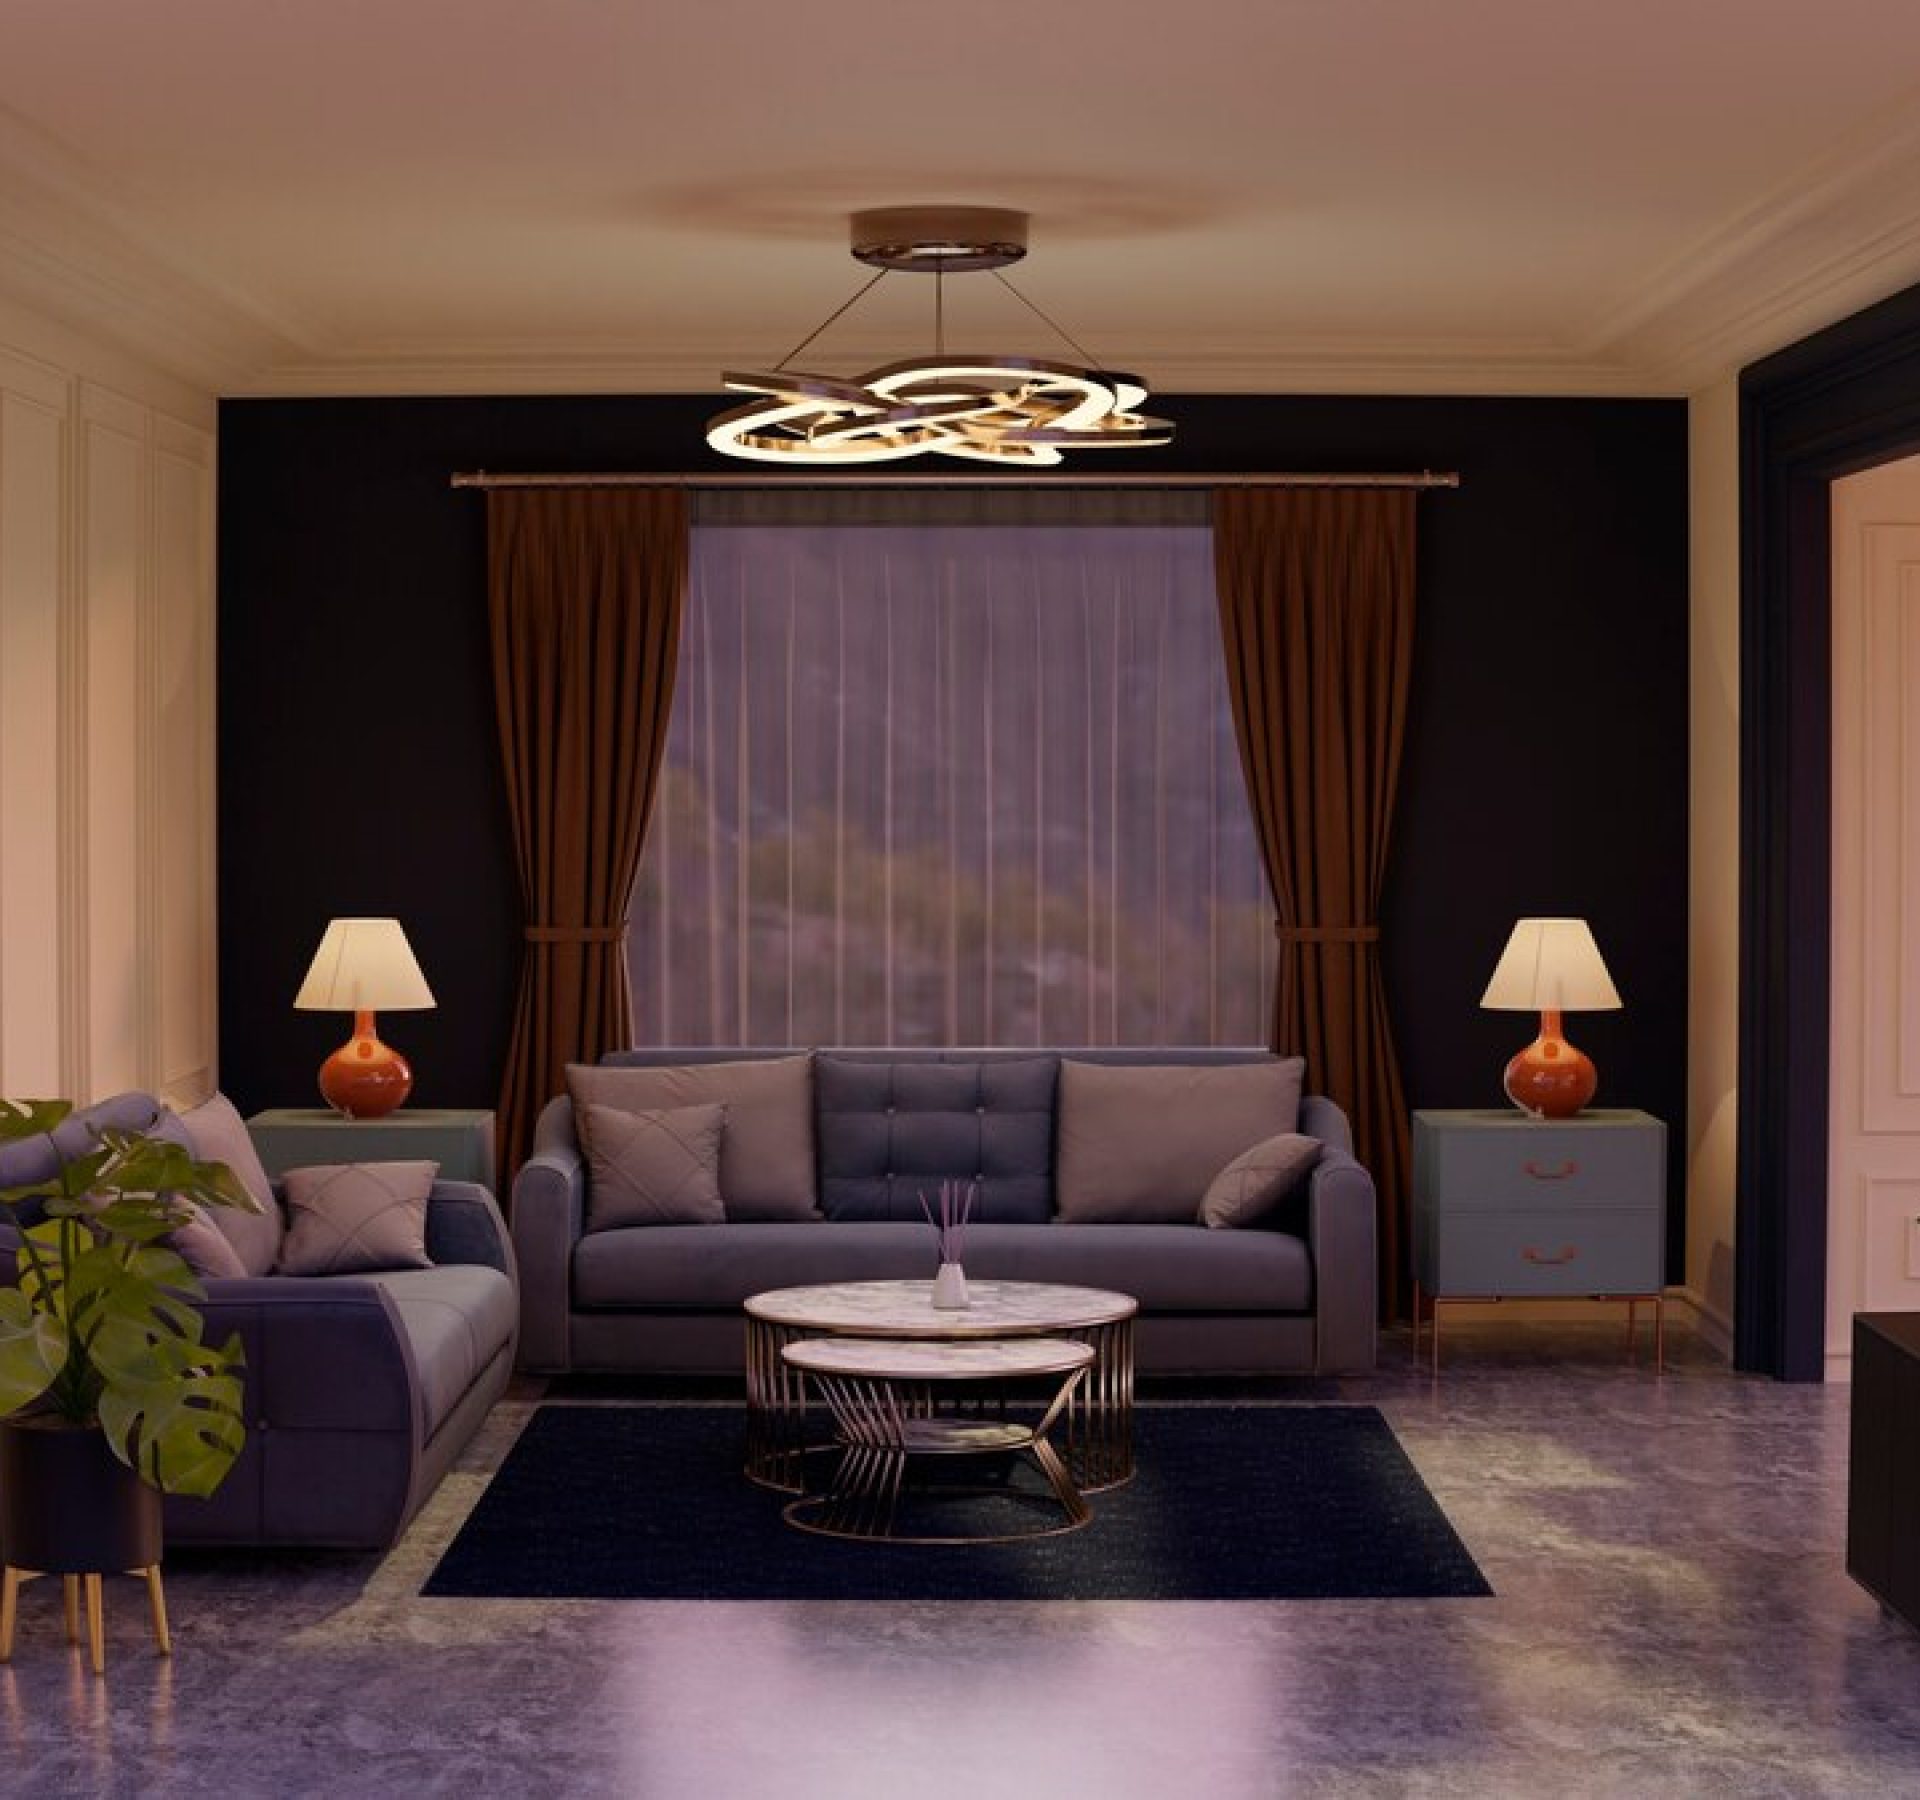 Arabic style apartment interior designers in Dubai